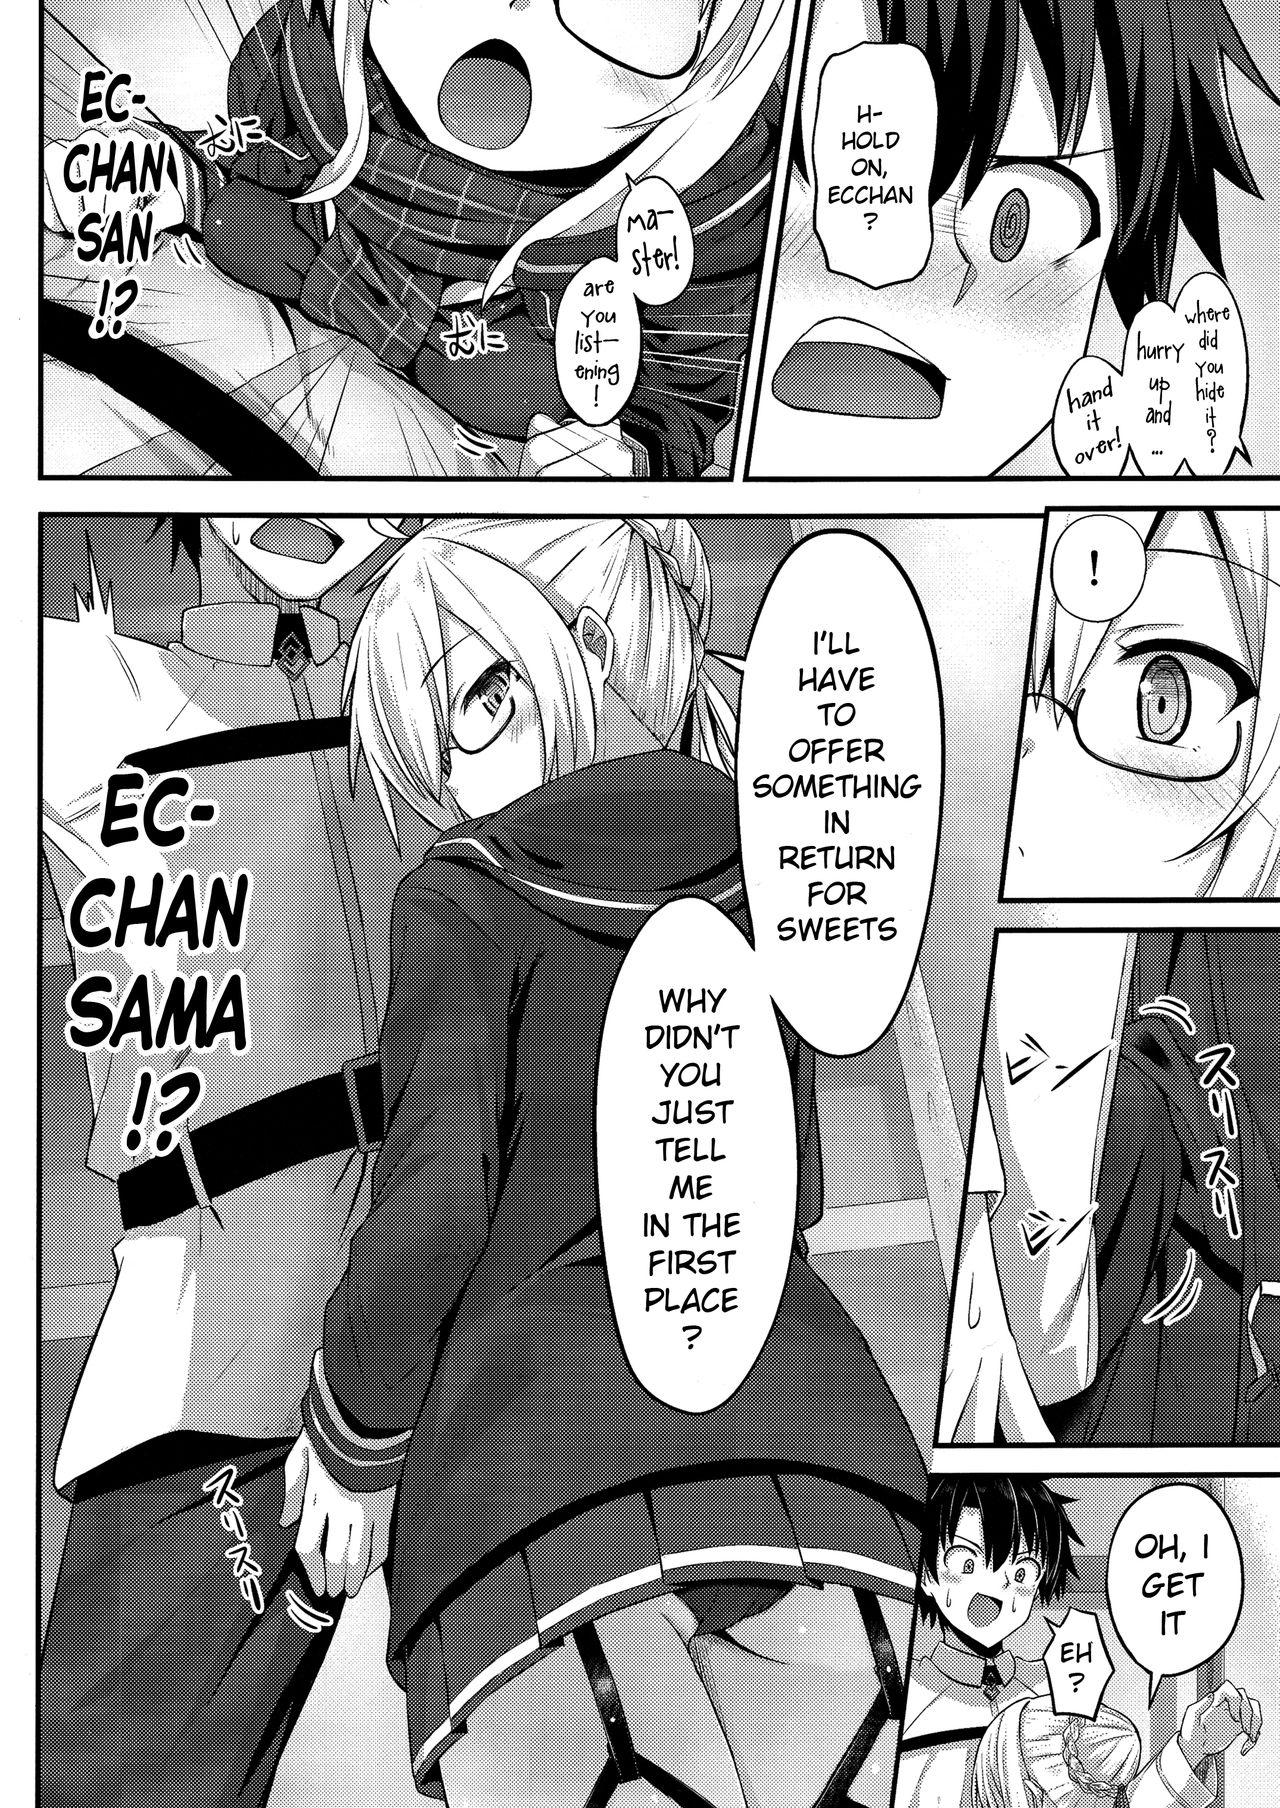 Mas Watashi, Sei Heroine ni Narimasu. - I will be a sexual hiroine. - Fate grand order Com - Page 7